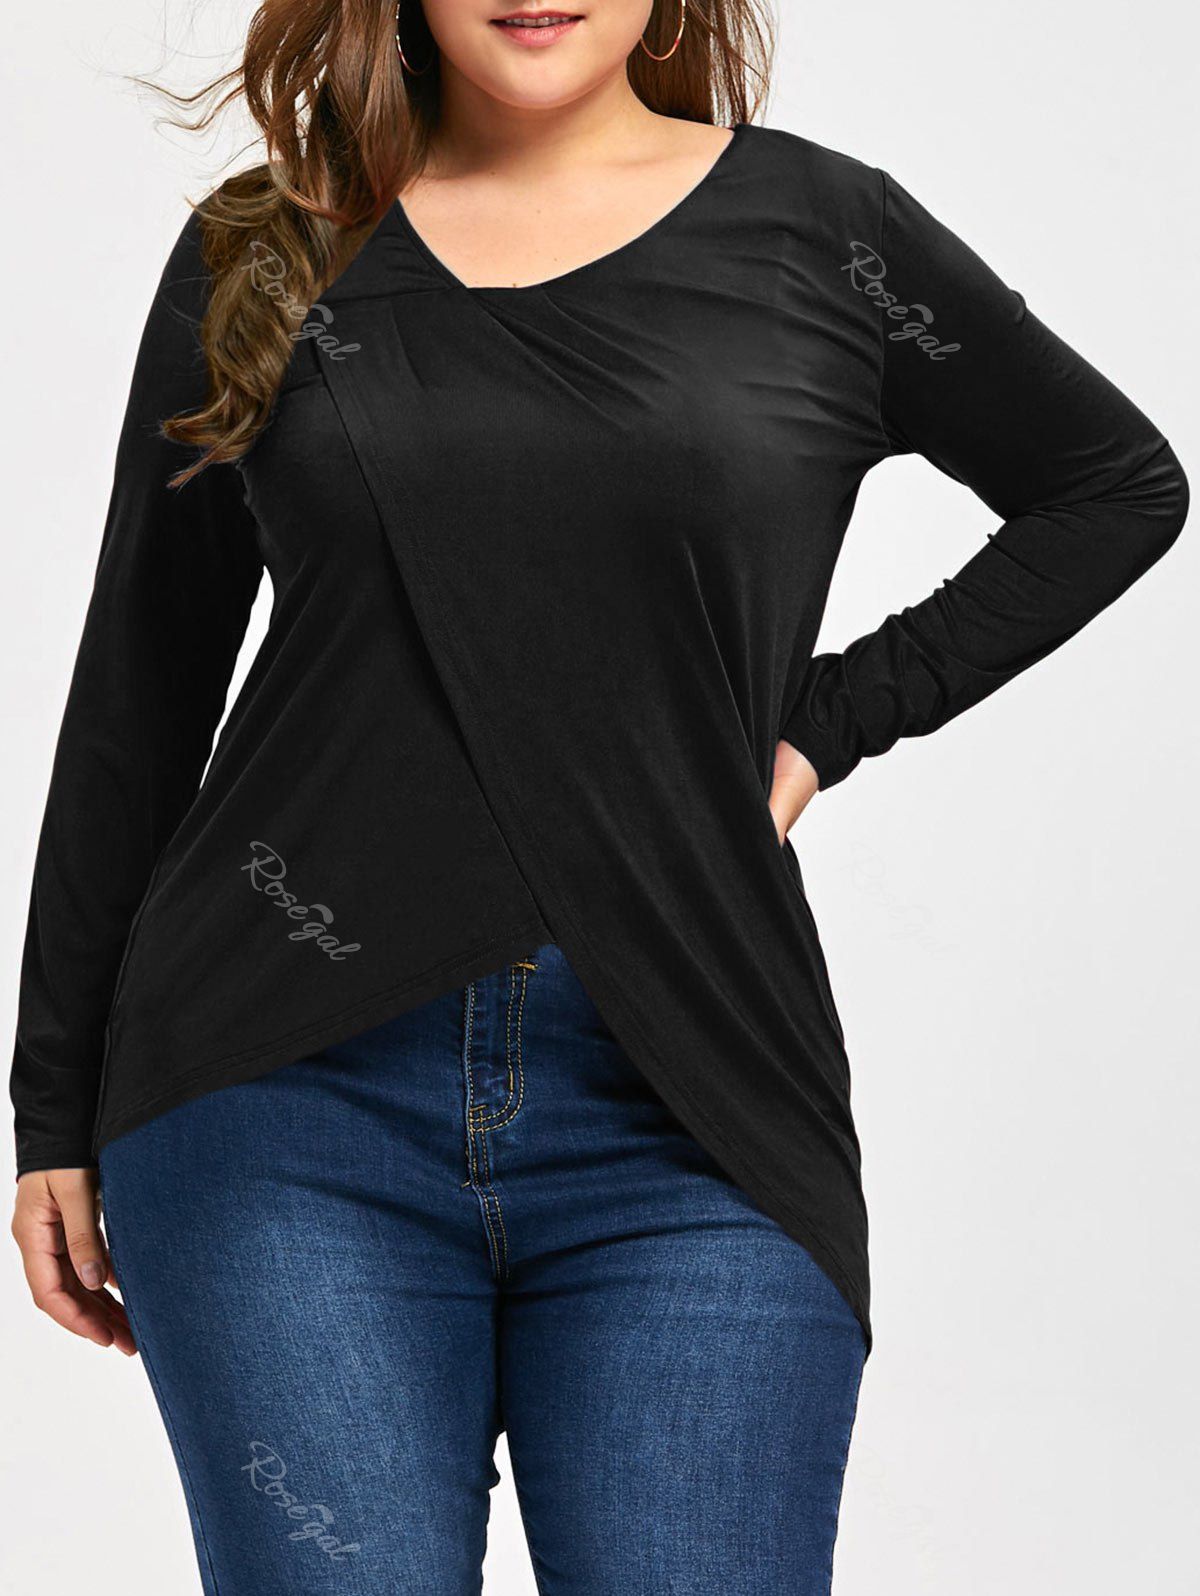 T-Shirt Irrégulier à Manches Longues Grande-Taille Noir XL